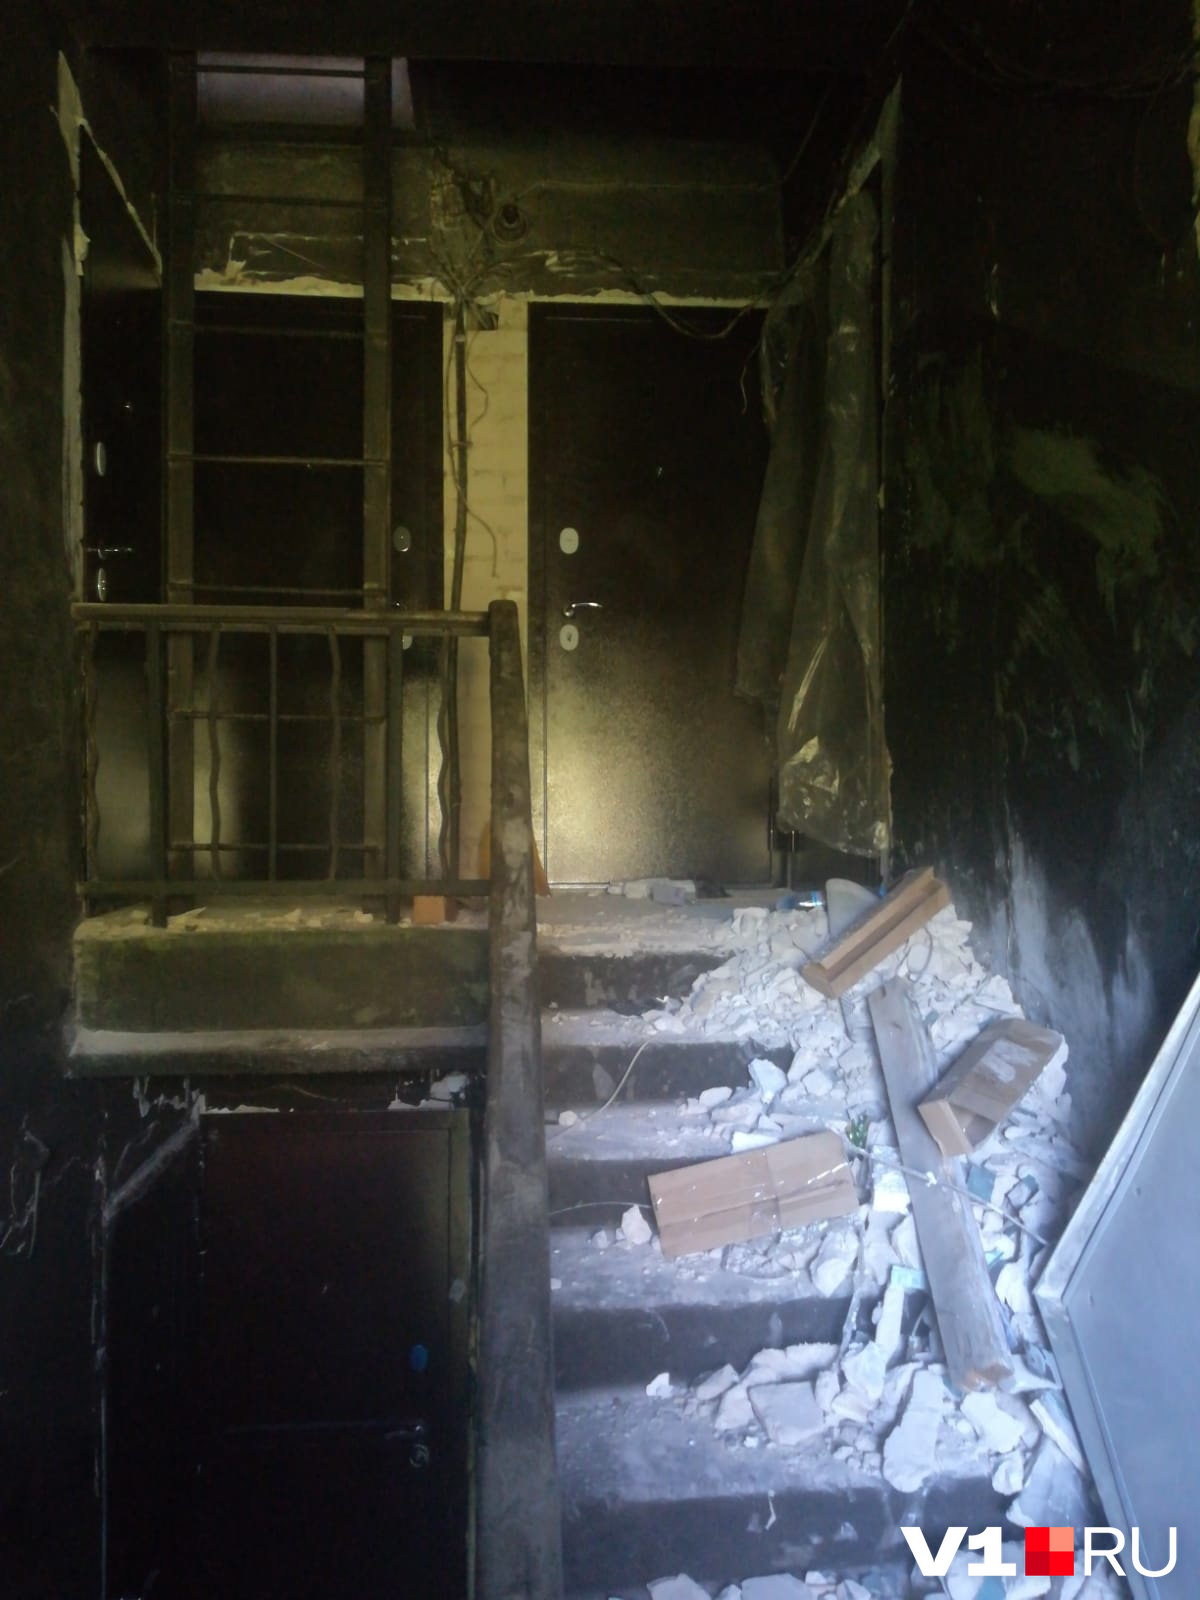 Мы каждый день боимся сгореть заживо»: жители дома в центре Волгограда  стали заложниками нездоровой соседки - 23 декабря 2021 - v1.ru